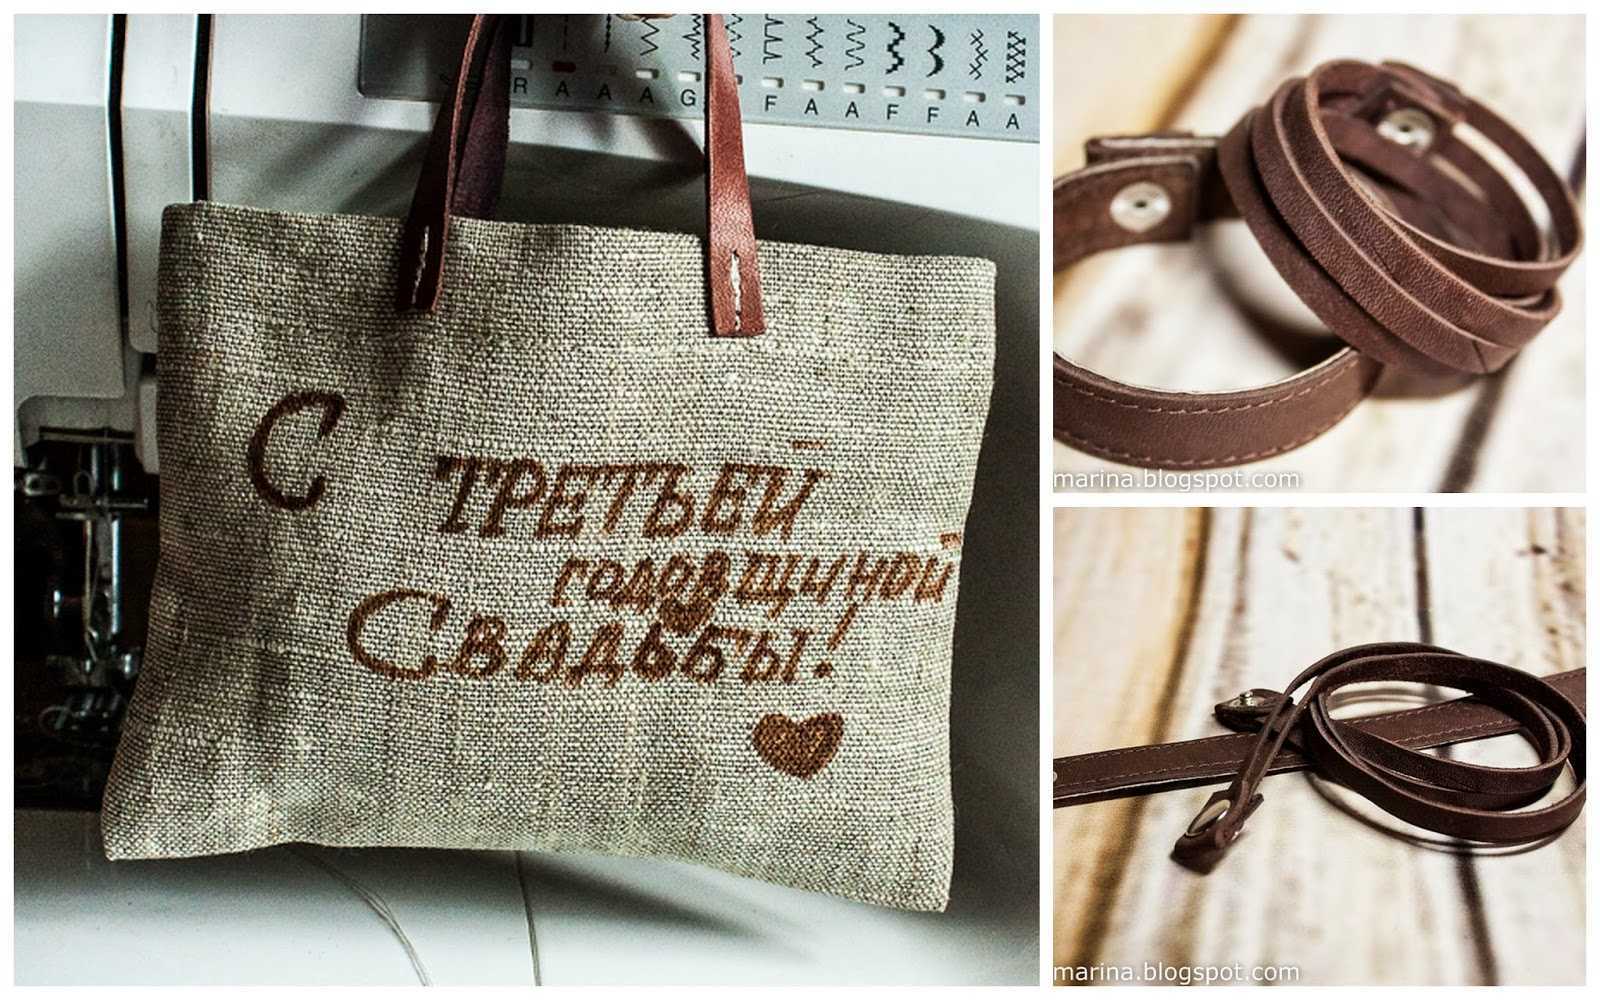 ᐉ что дарить на кожаную годовщину (3 года свадьбы)? три года совместной жизни - svadba-dv.ru